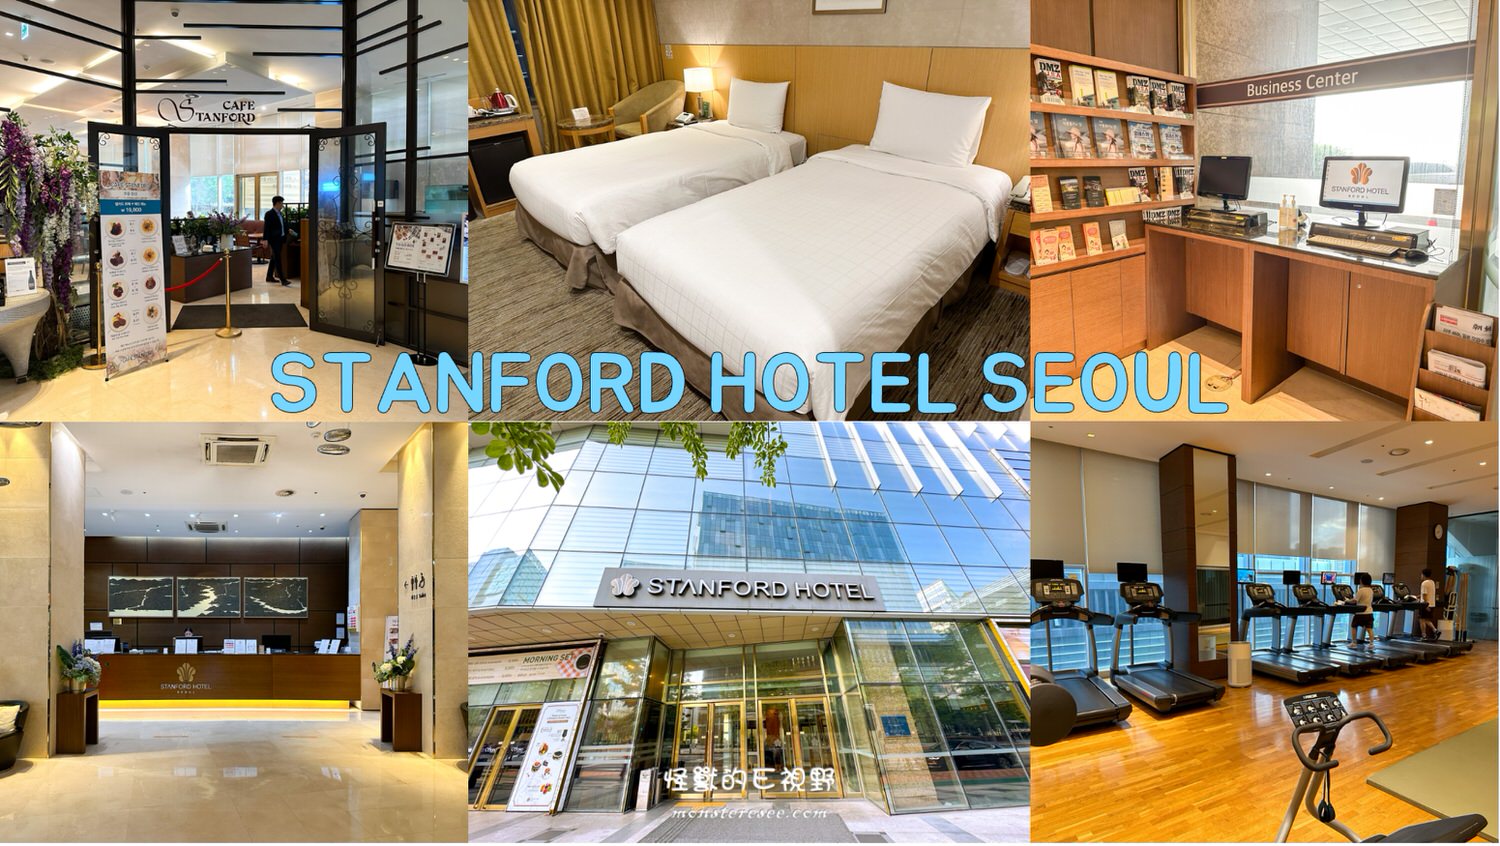 STANFORD HOTEL SEOUL首爾斯坦福酒店0